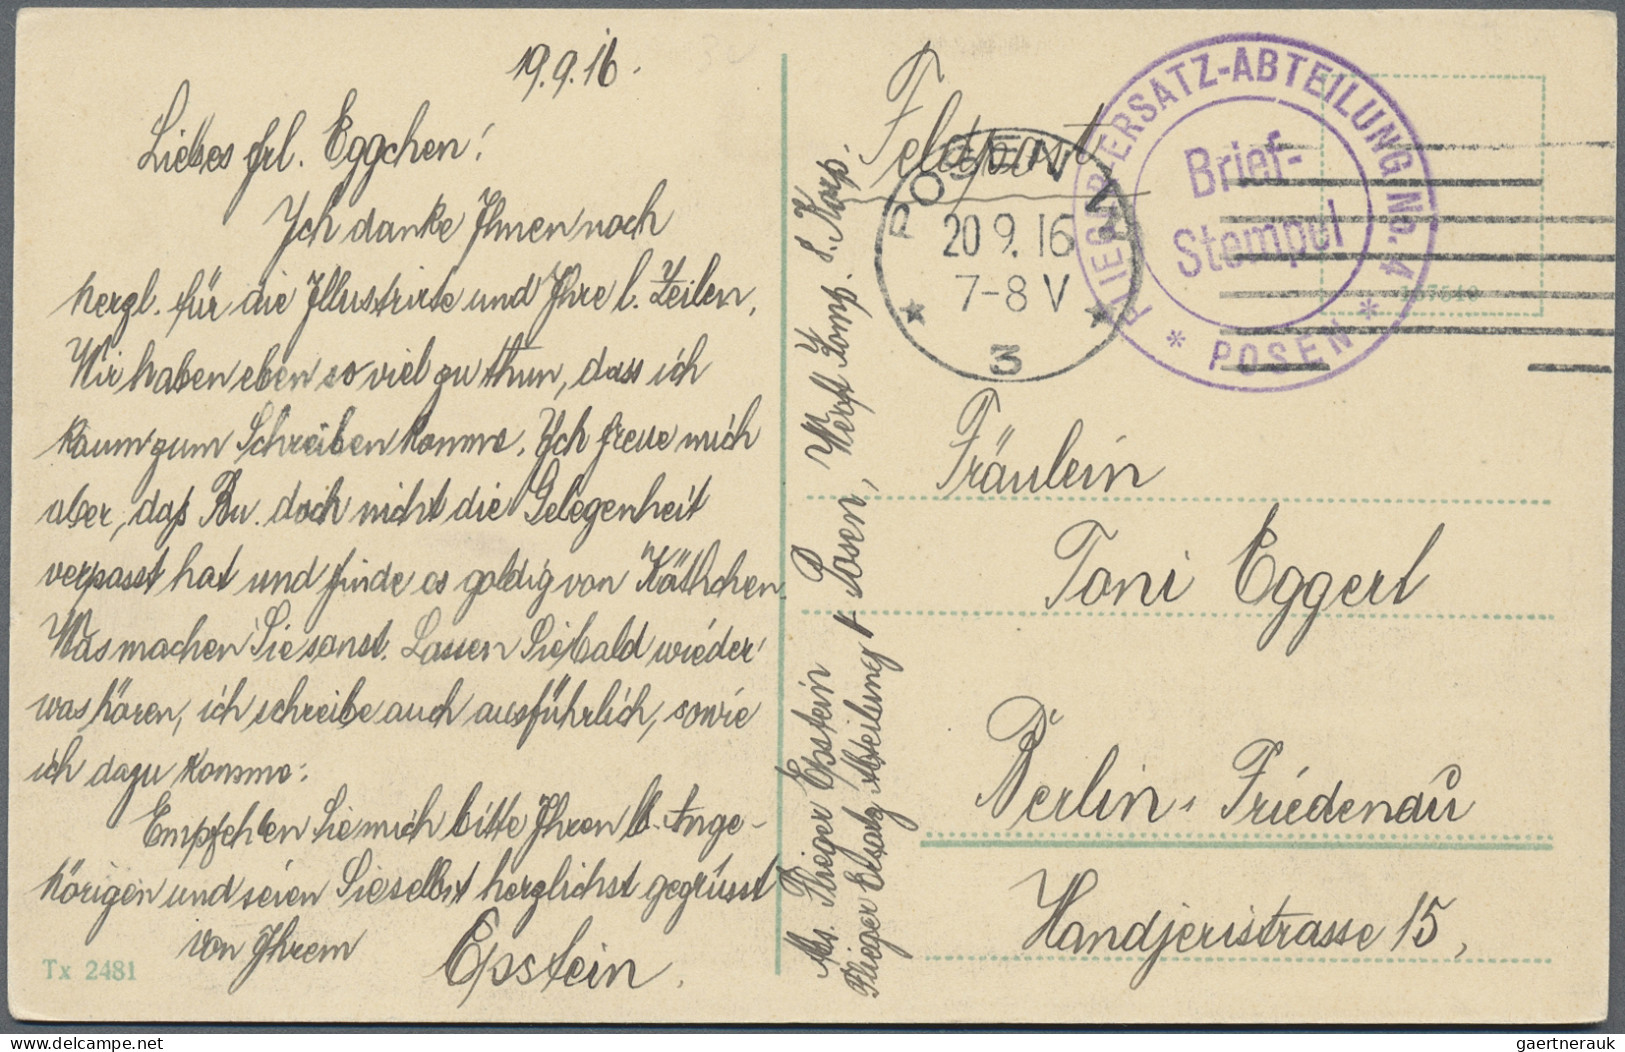 Ansichtskarten: Motive: ZEPPELIN: Over 140 Zeppelin postcards, mostly Real Photo